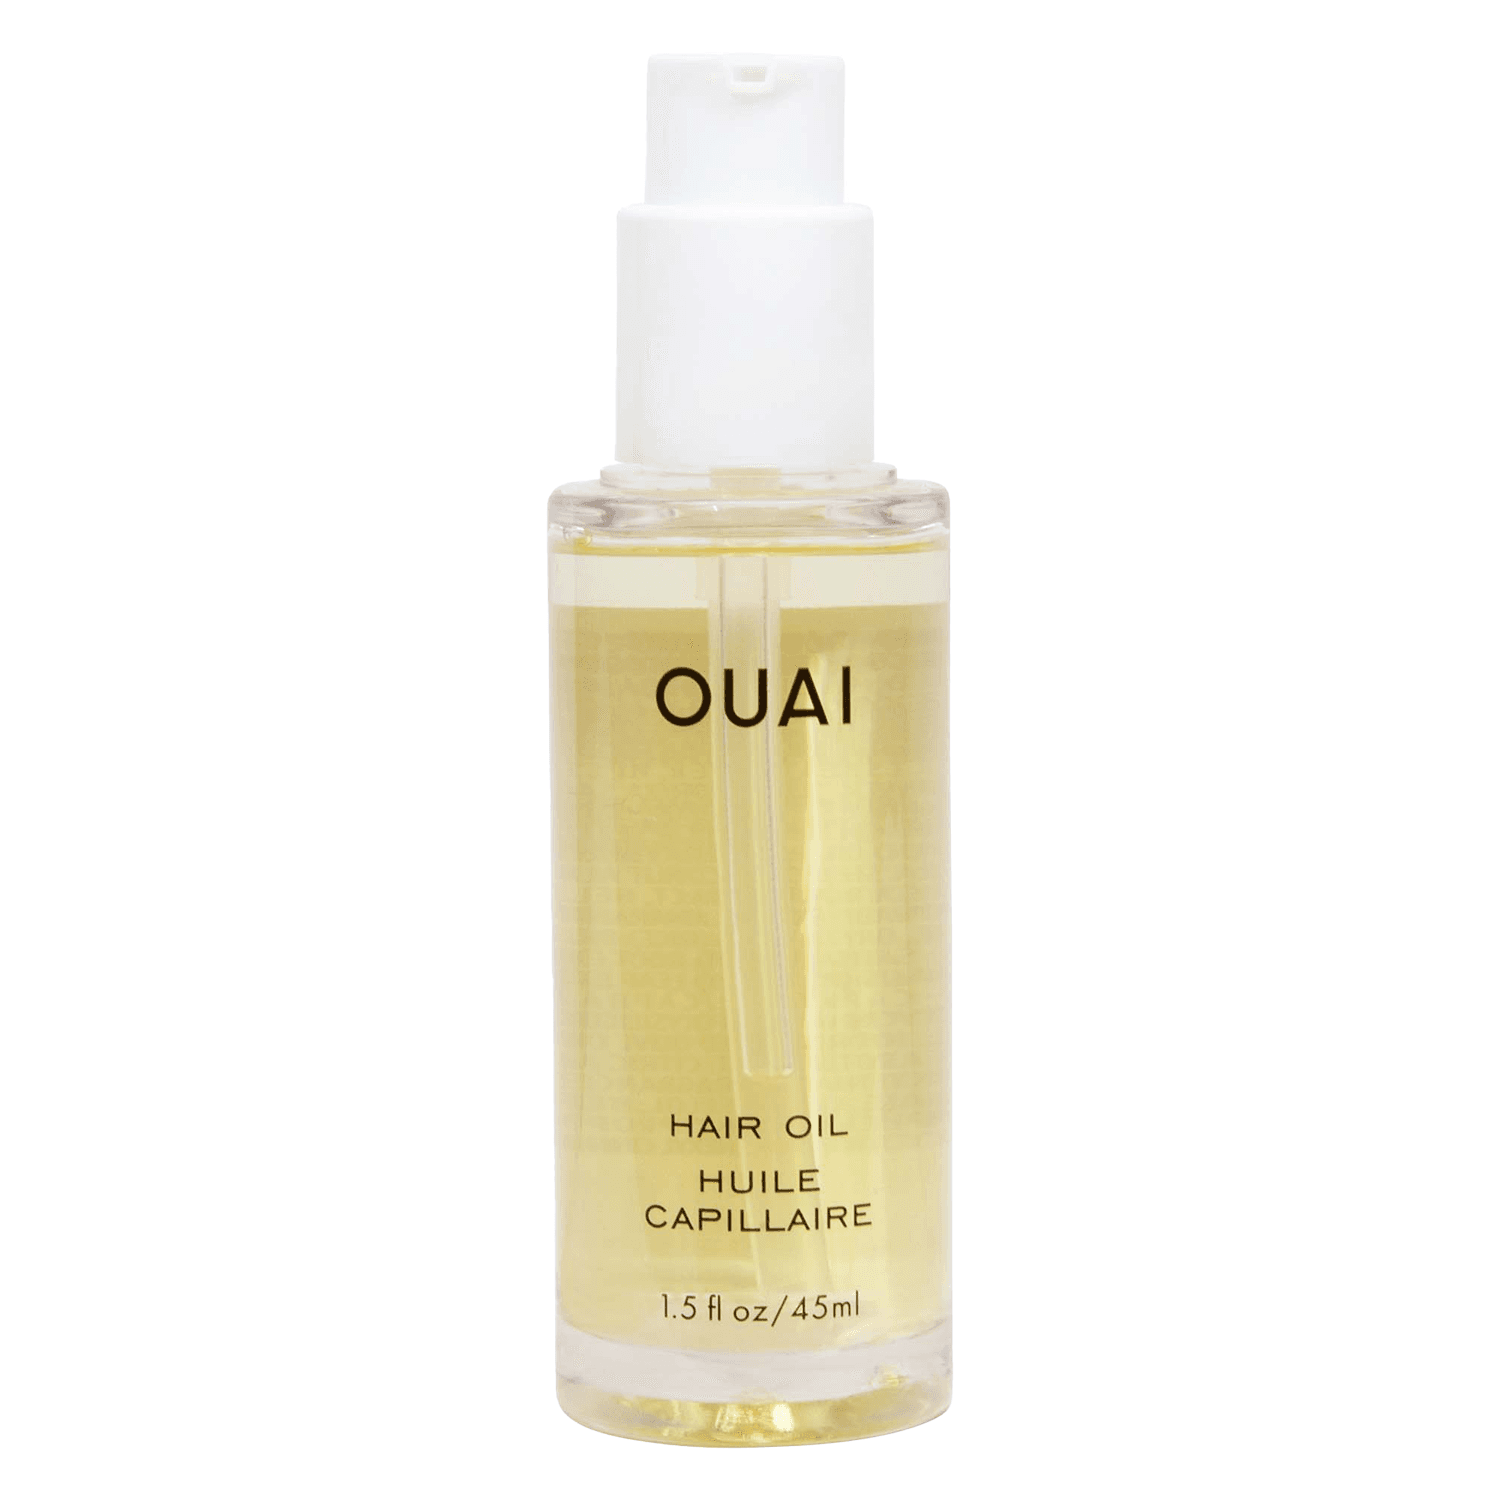 OUAI - Hair Oil